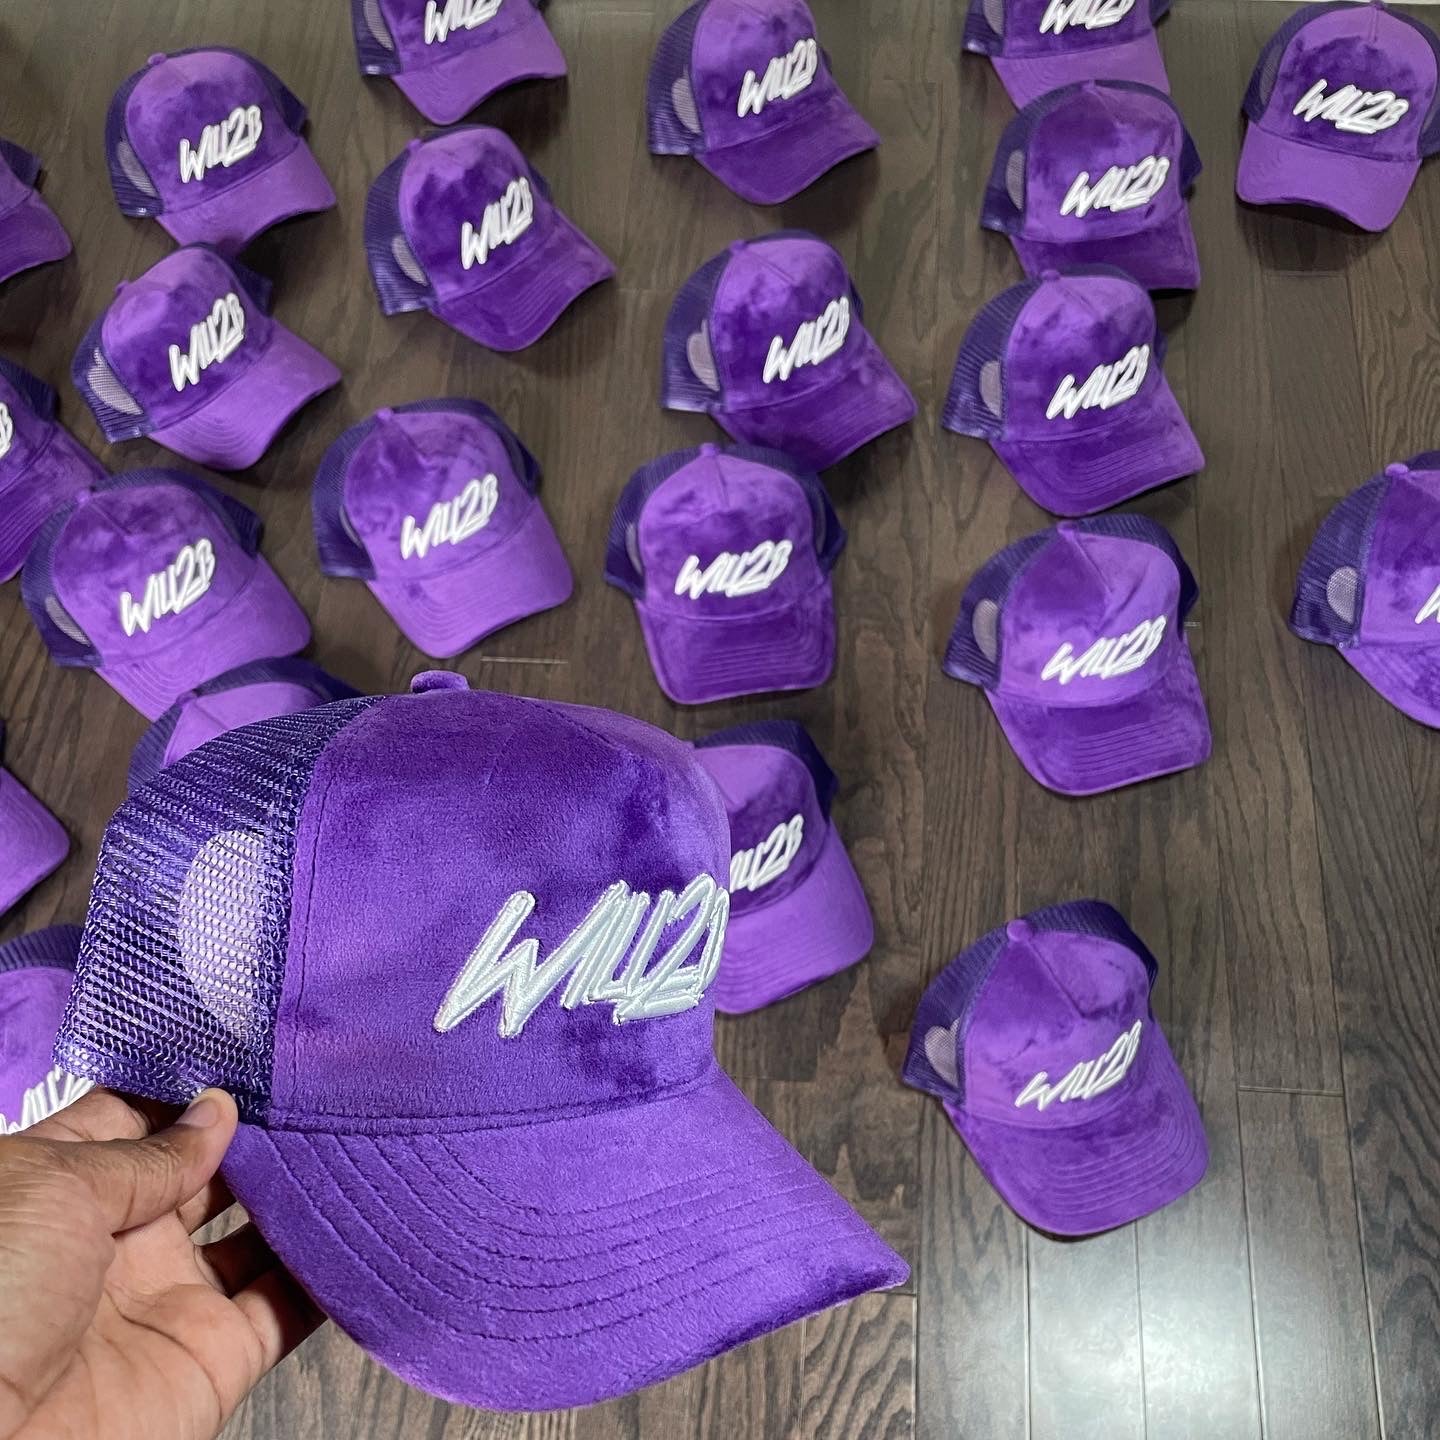 Will2B Trucker Hats